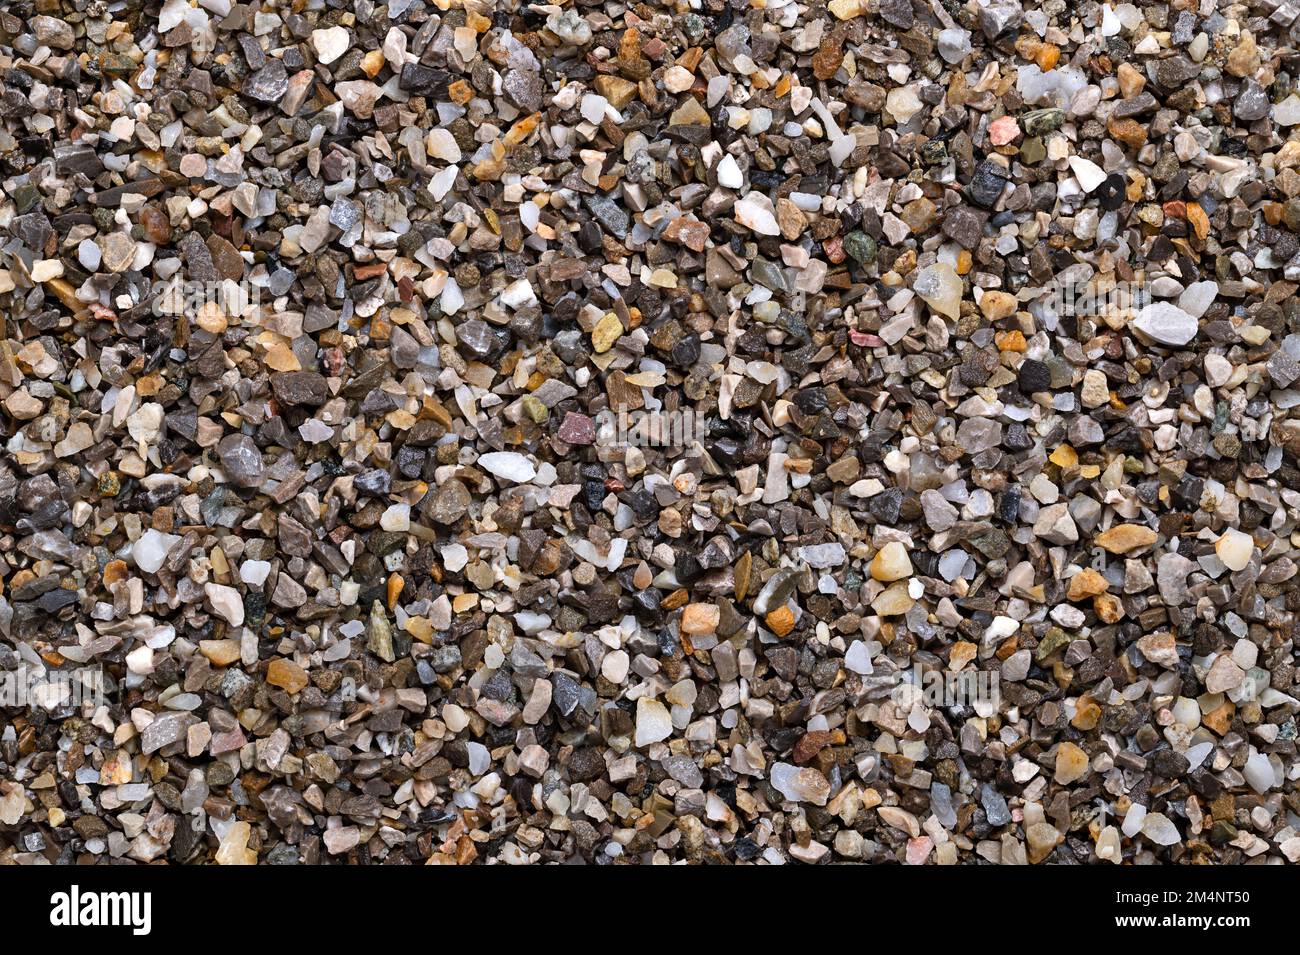 Befeuchten Sie lose Späne, zerkleinerte Steine, Straßen- und Putzkörner, Oberfläche, von oben. Kalk- und eisenfreier Quarzsand, der als Streugut verwendet wird. Stockfoto